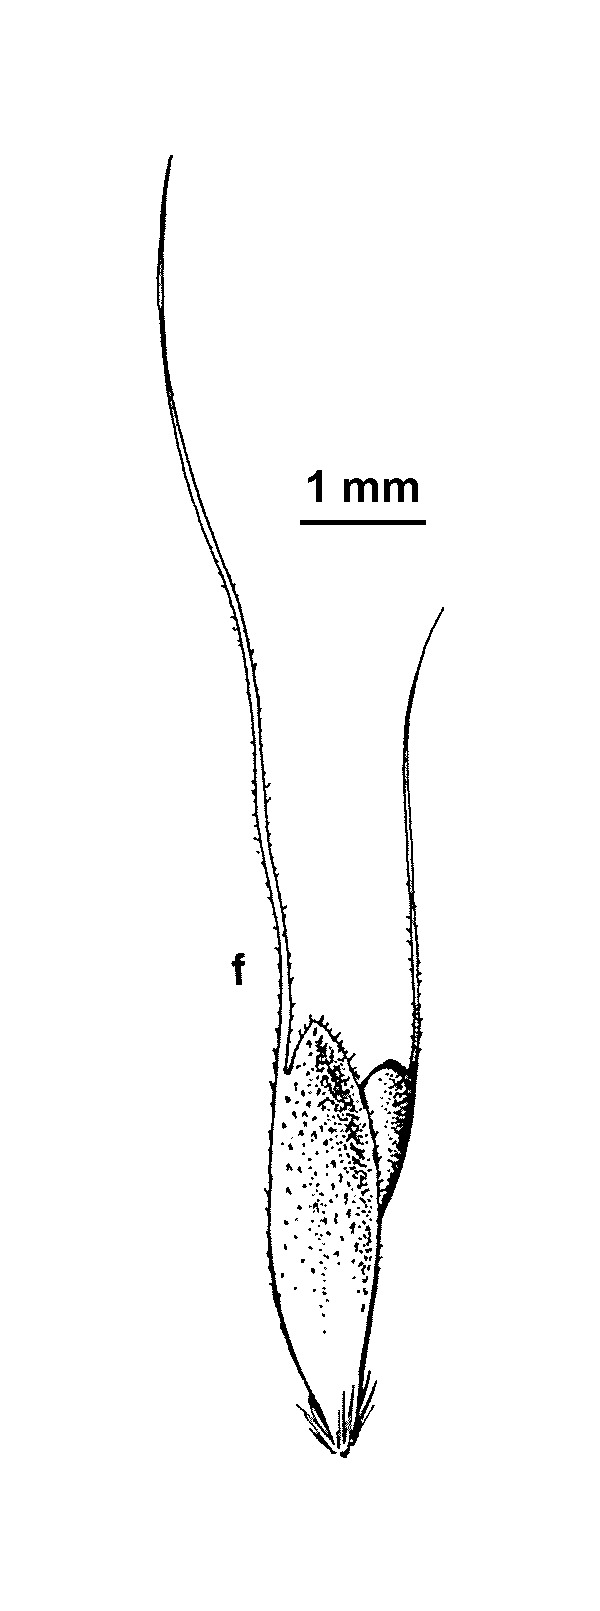 Chloris ventricosa (hero image)